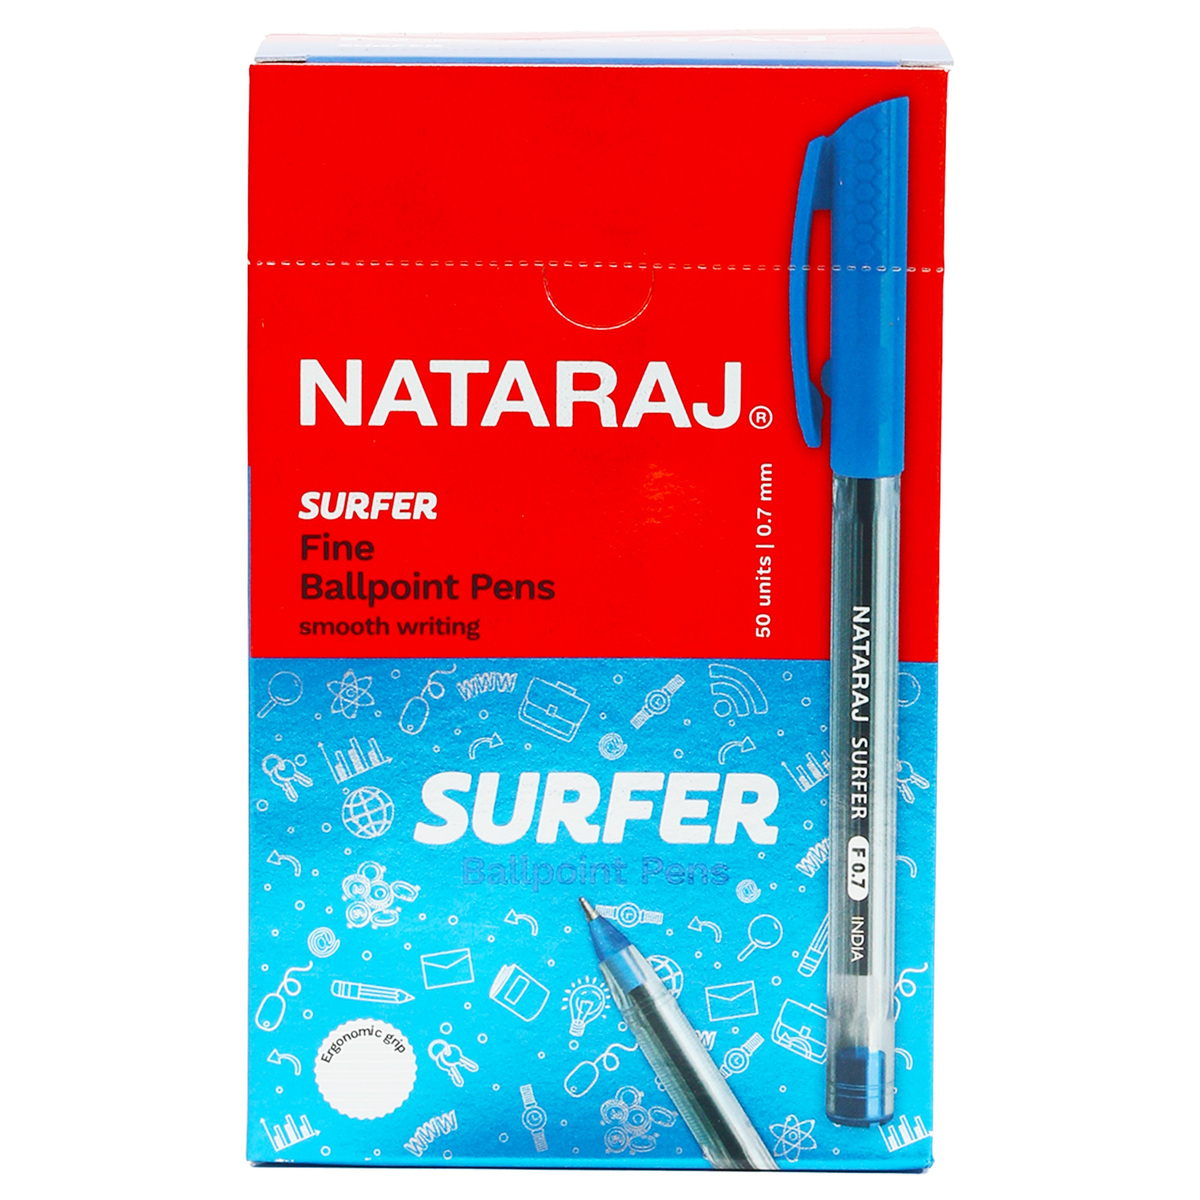 Nataraj Ballpoint Pens Surfer Blue 0.7mm 50 pcs